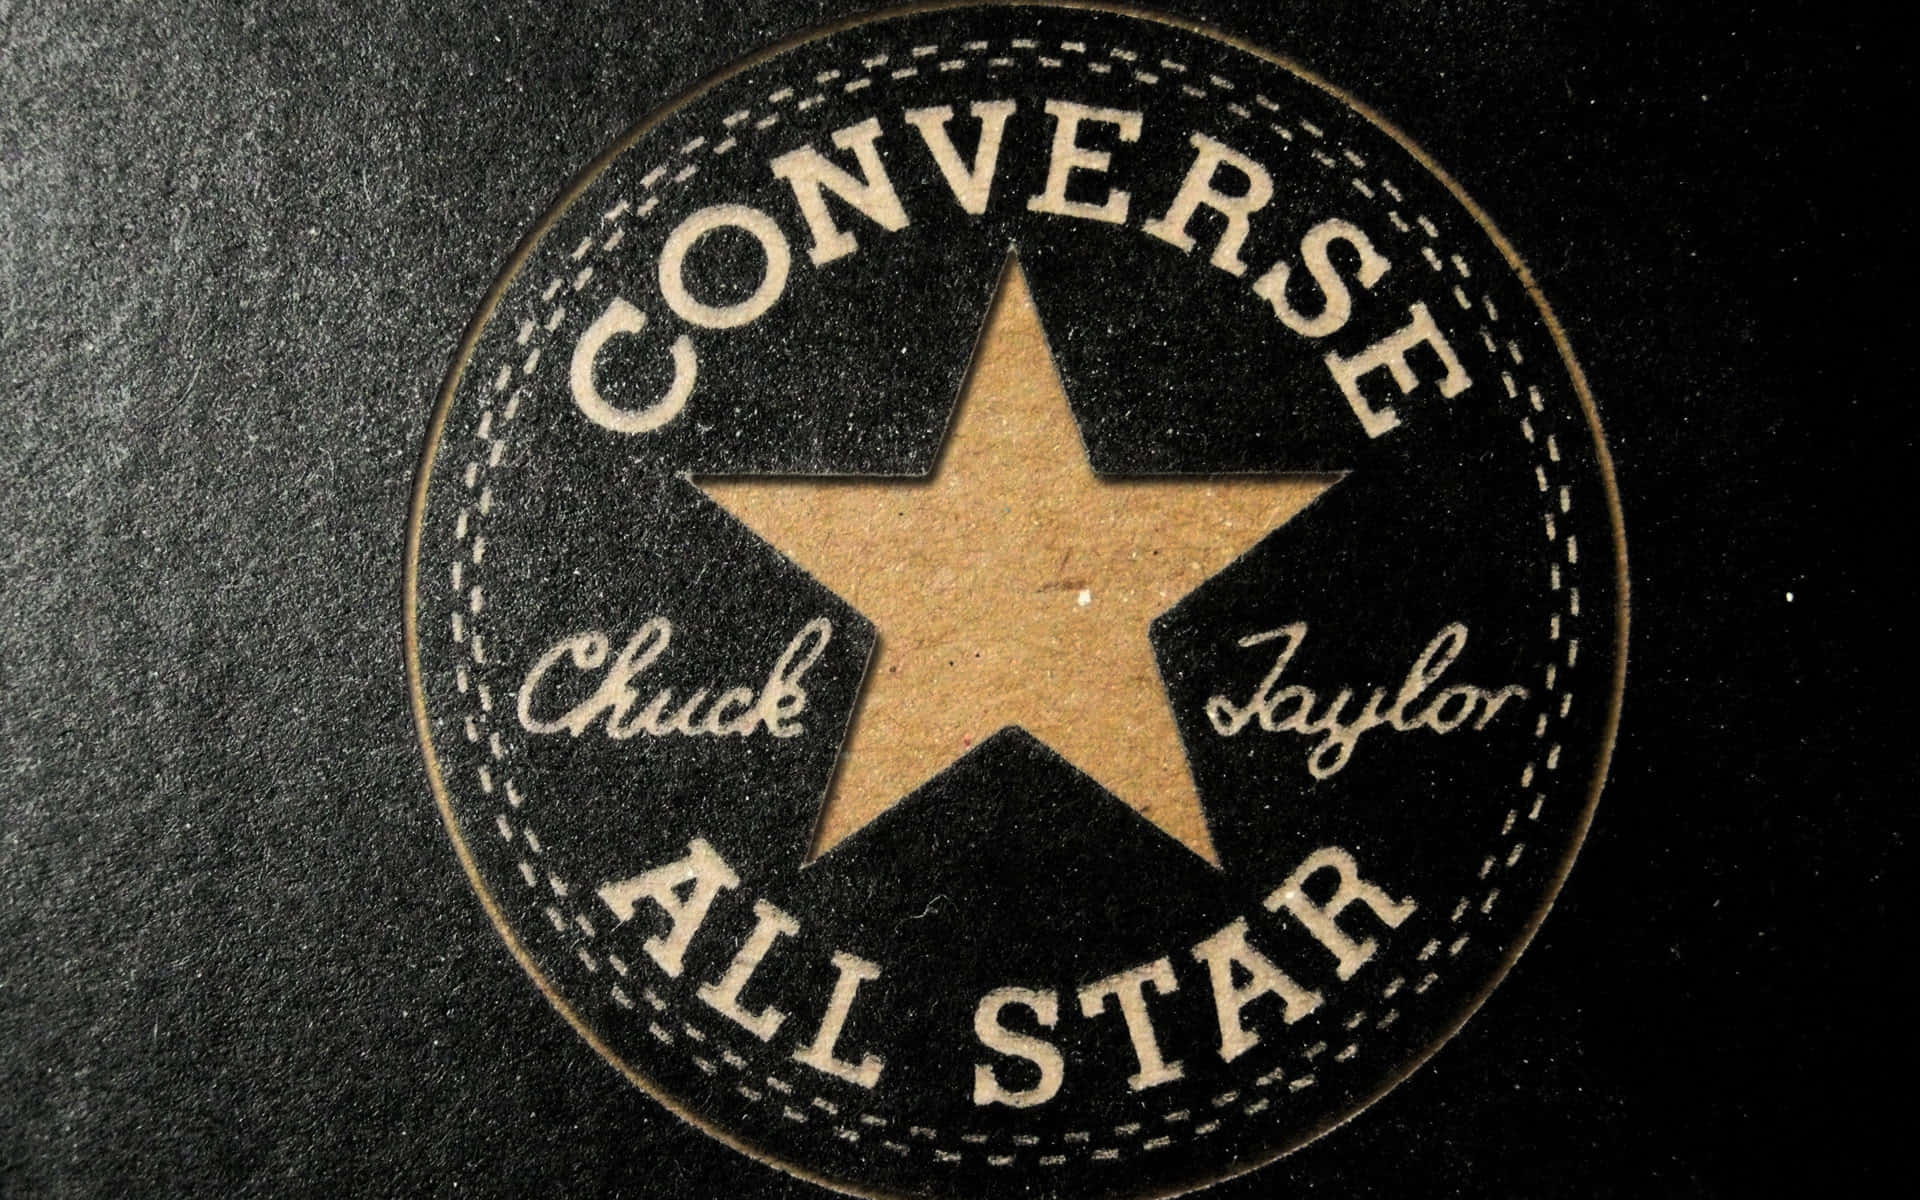 Billedeaf Ikonisk Amerikansk Skobrand, Converse's Logo.